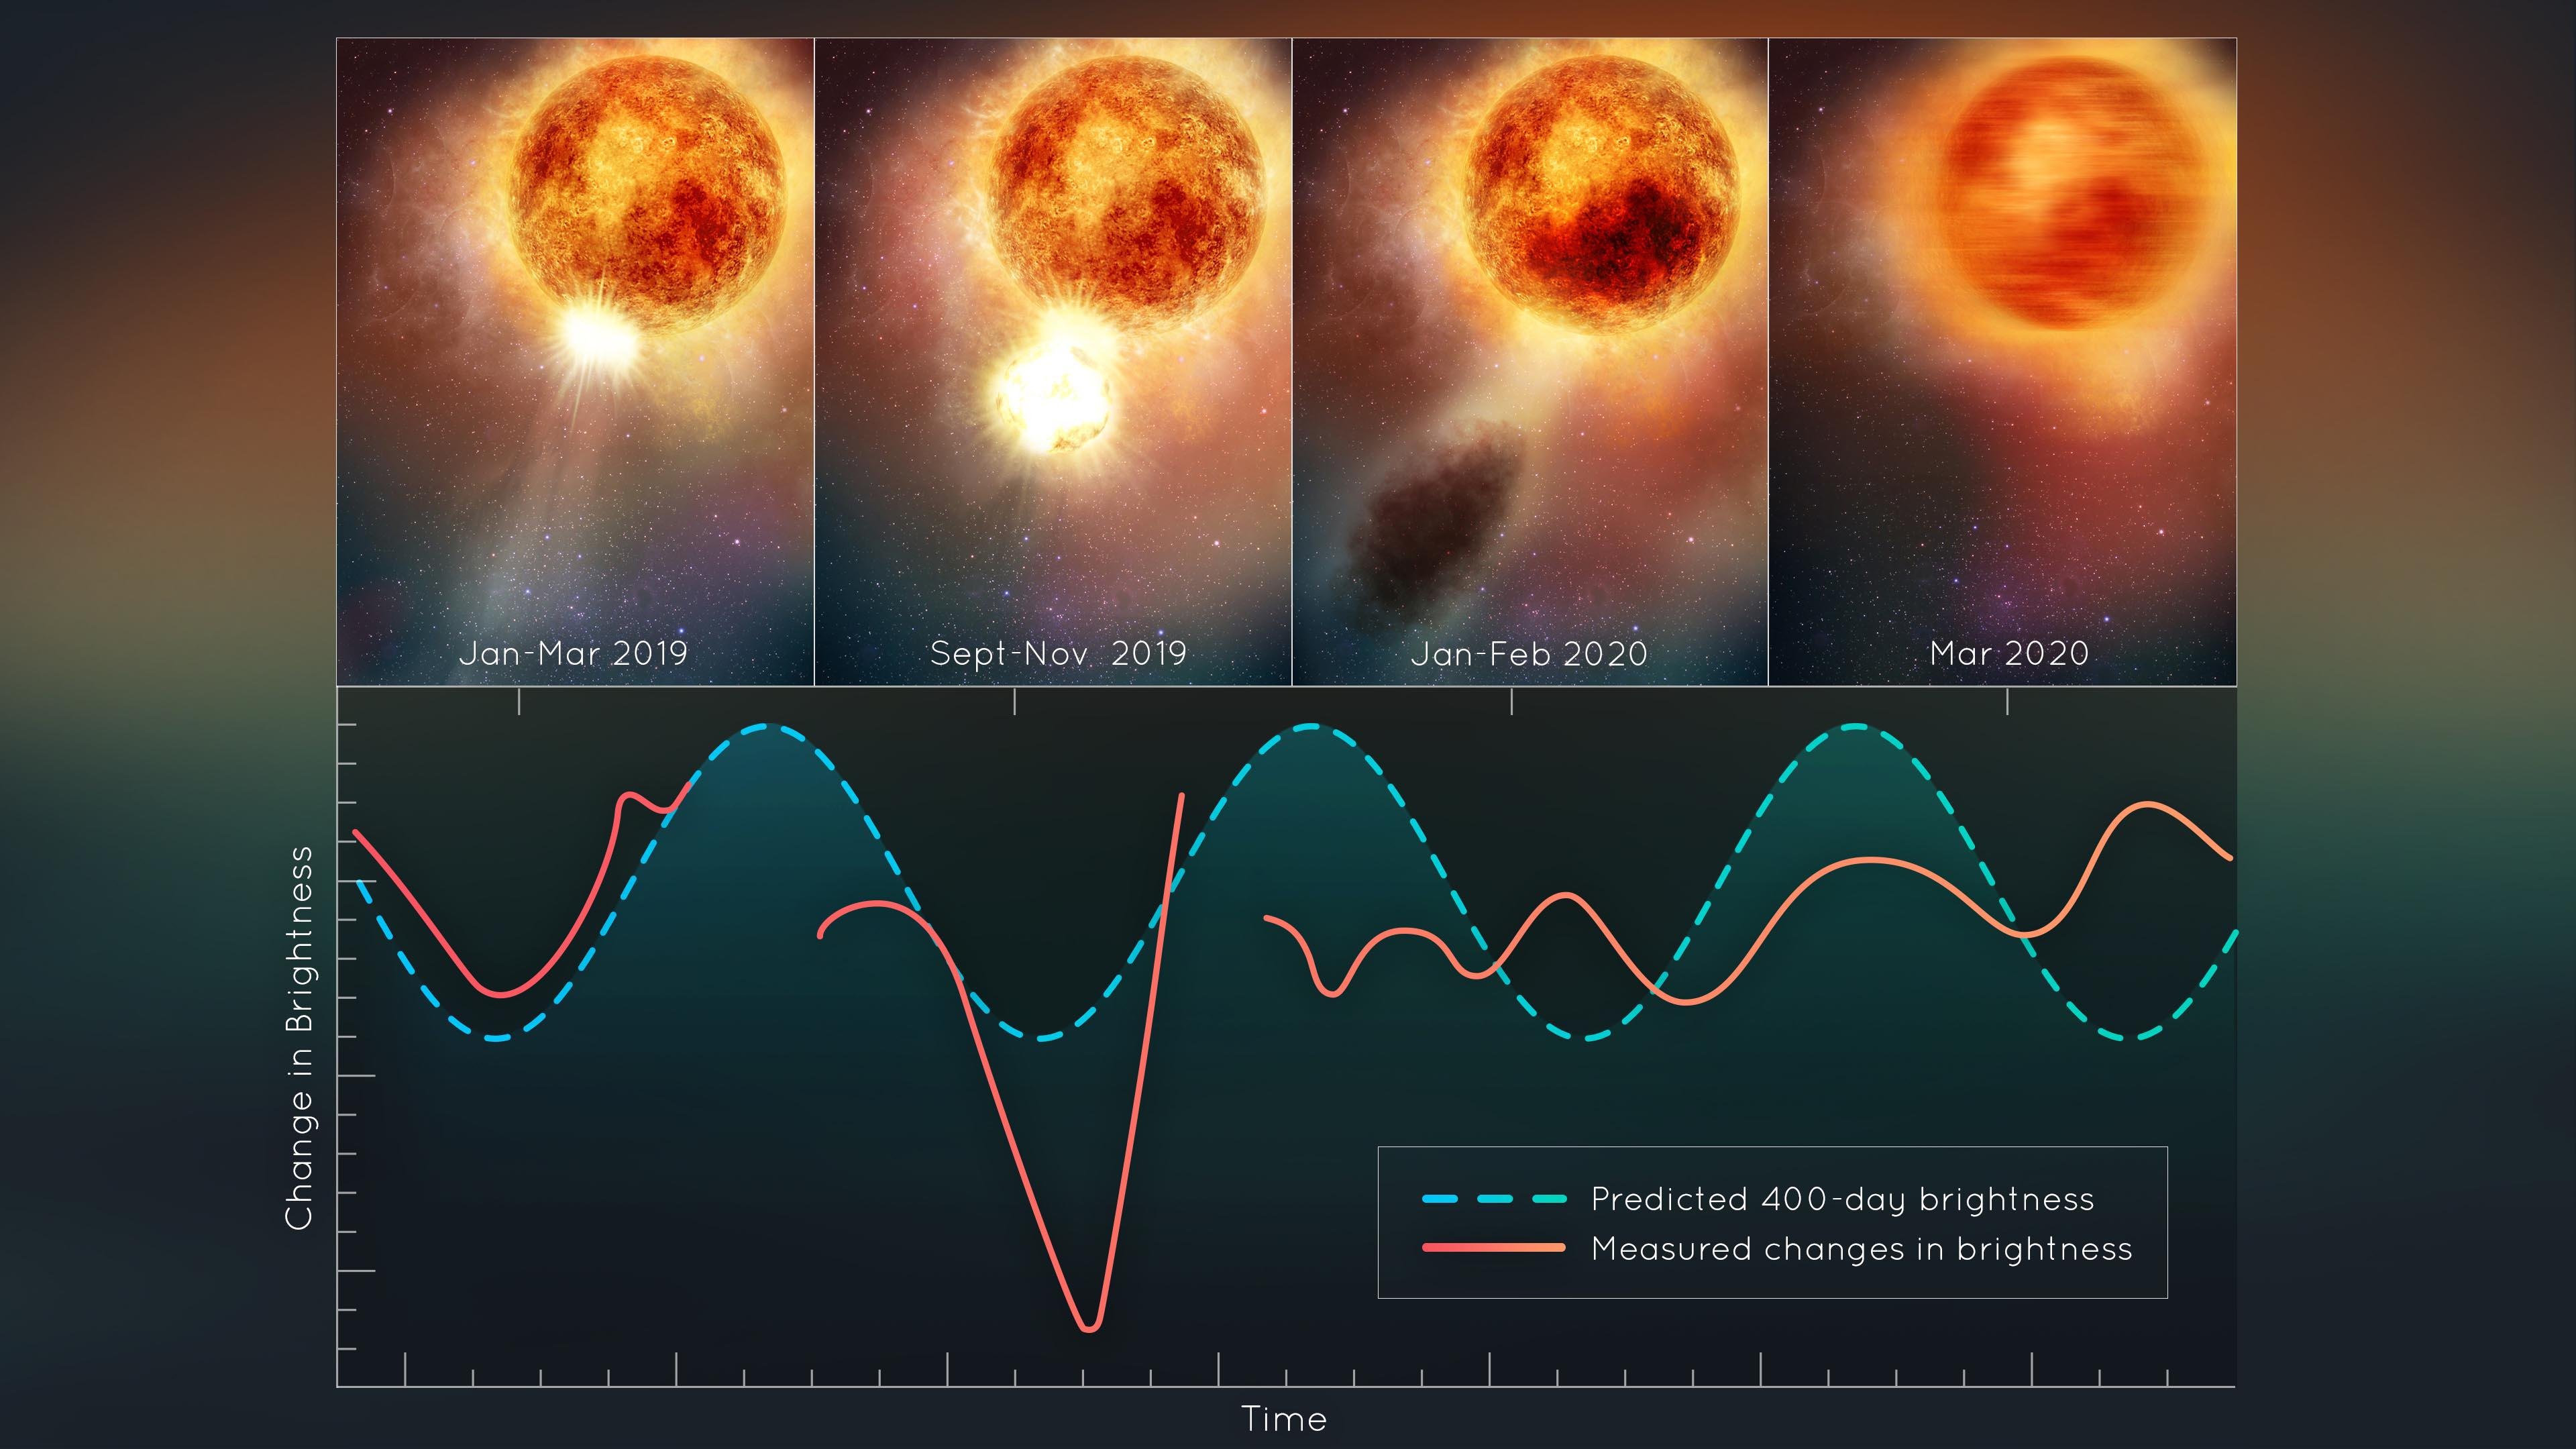 Os cientistas estão estudando os dados para entender o motivo por trás do evento estelar